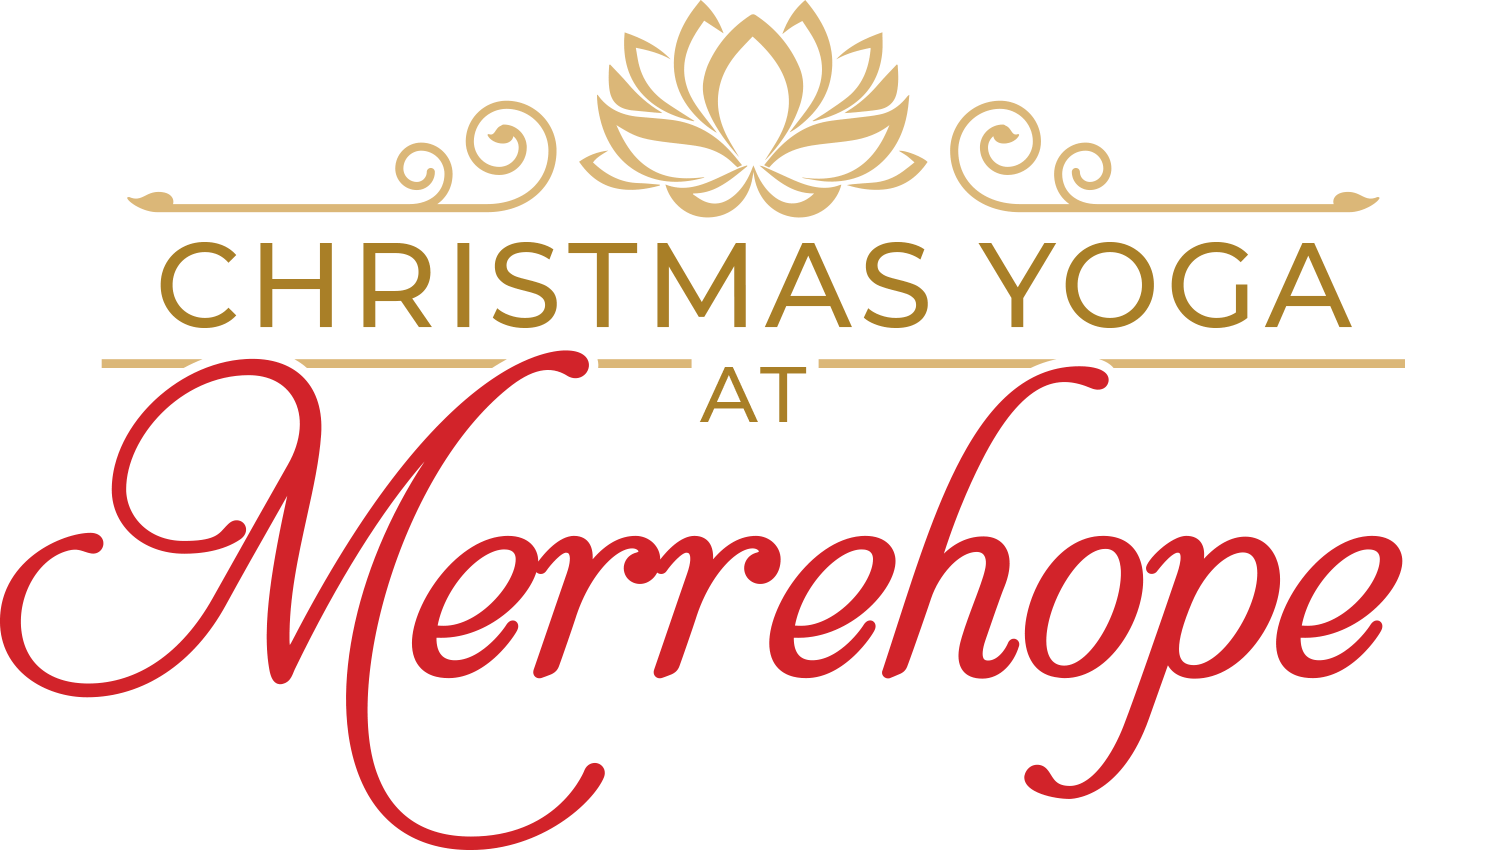 Merrehope's Yoga logo